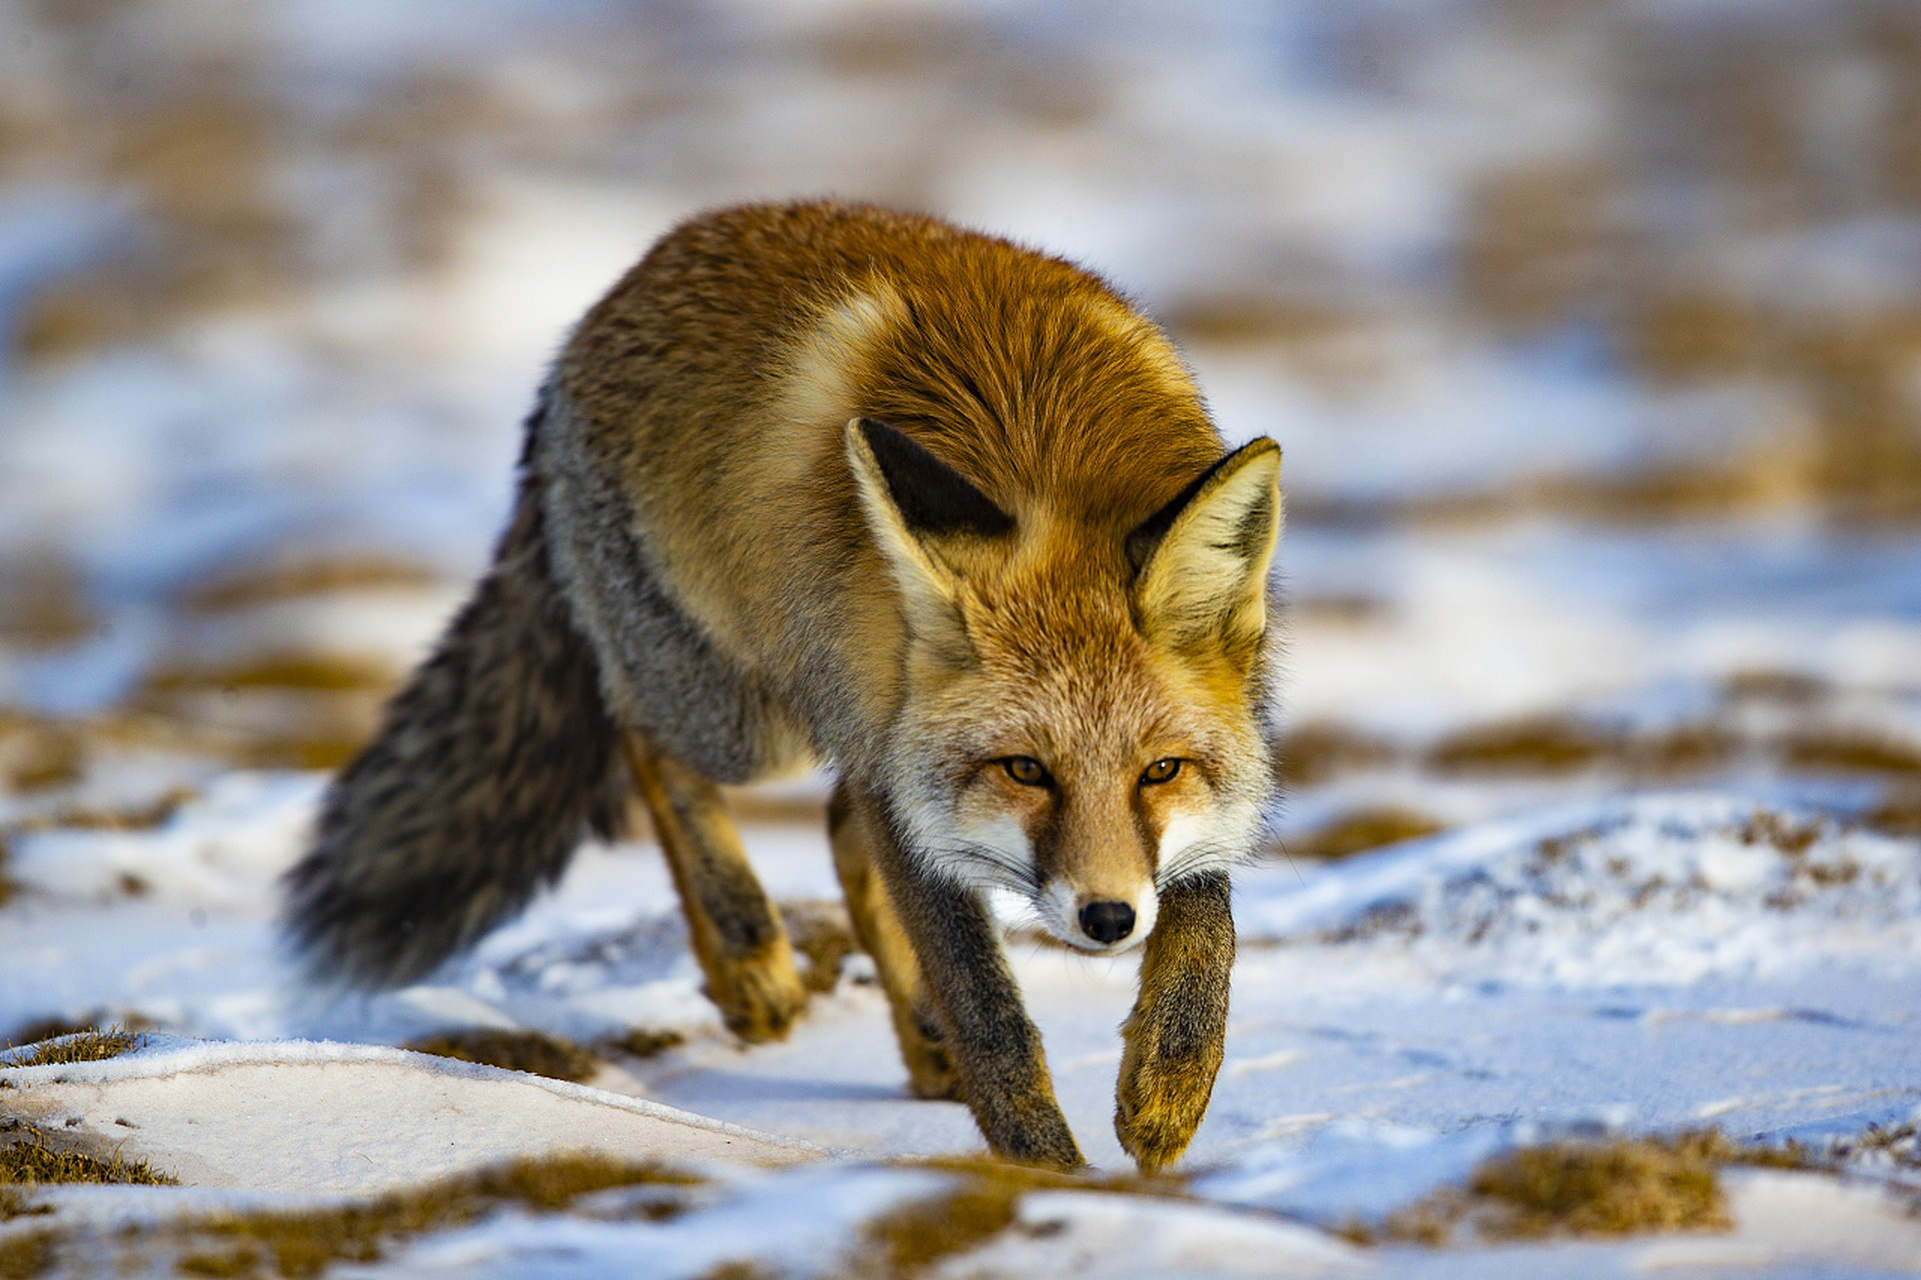 狐狸的尾巴有很大的用途,它可以帮助狐狸保持平衡,又可以当做保暖的